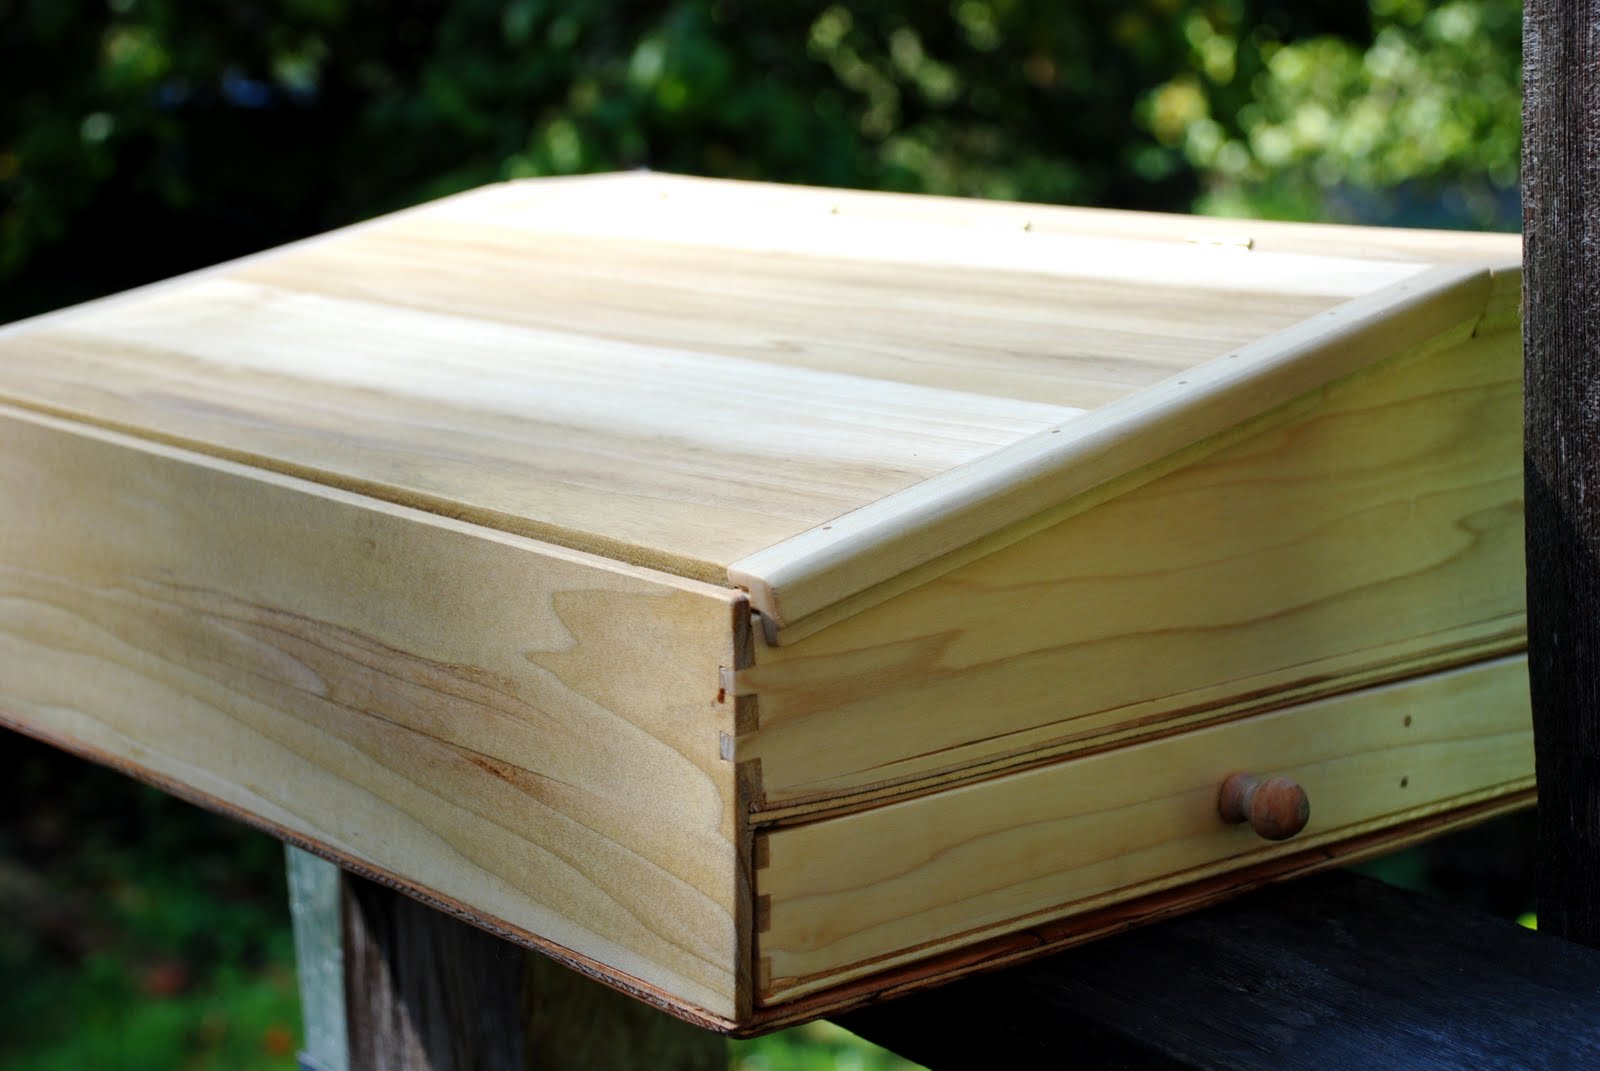 Wooden Lap Desk Plans Free Download How To Build A Arbor Plans